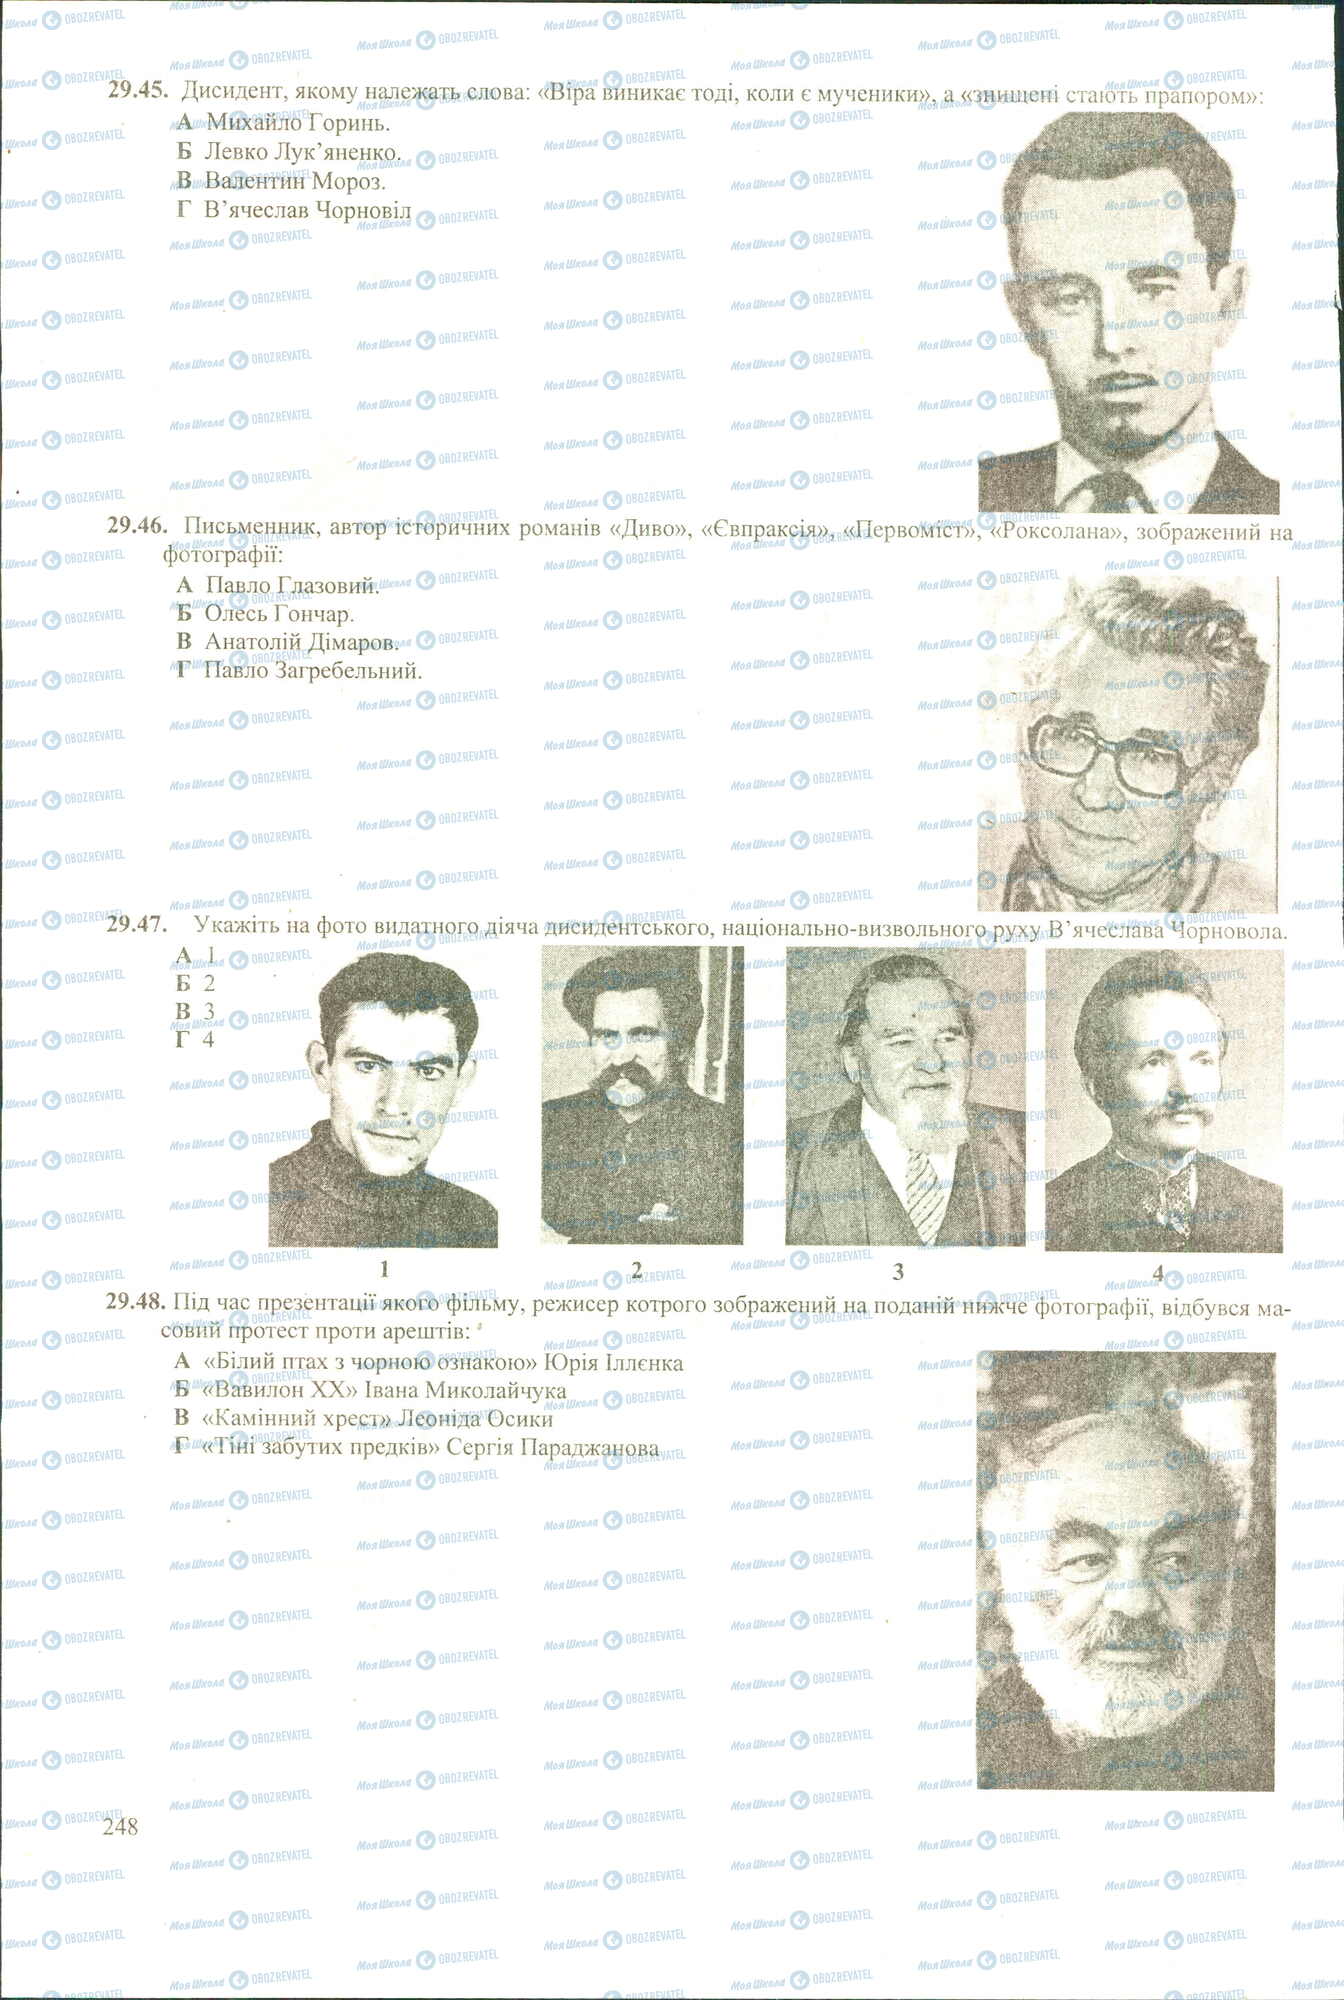 ЗНО История Украины 11 класс страница 45-48